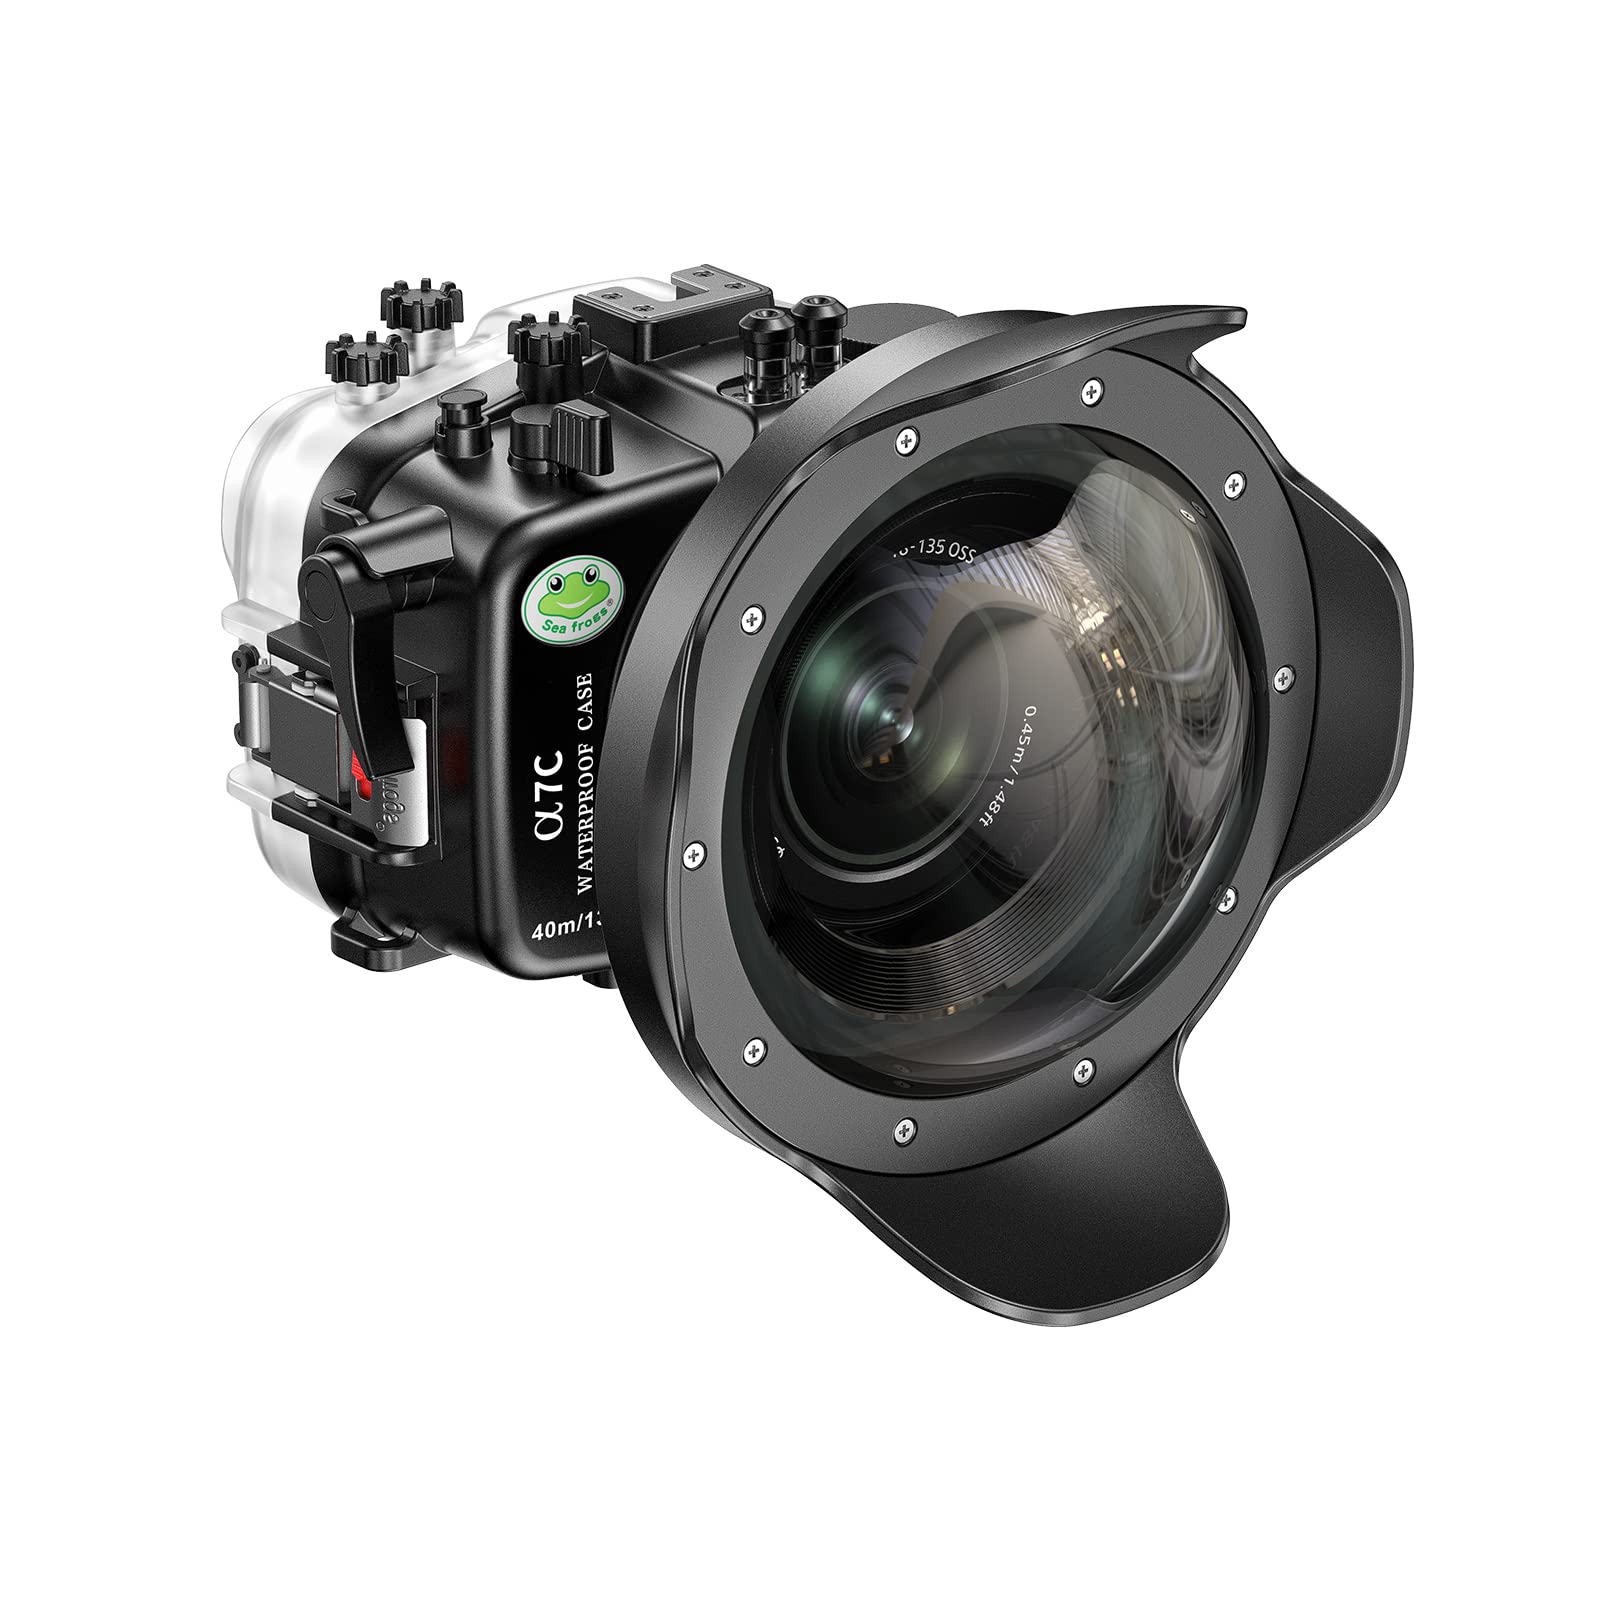 Sea frogs Unterwasser Kamera Gehäuse kompatibel mit Sony A7C 28-60MM 10-18MM Mit Weitwinkelanschluss 132 Feet/ 40 Meter Wasserdichtes Gehäuse wasserdichte Qualität: IPX8